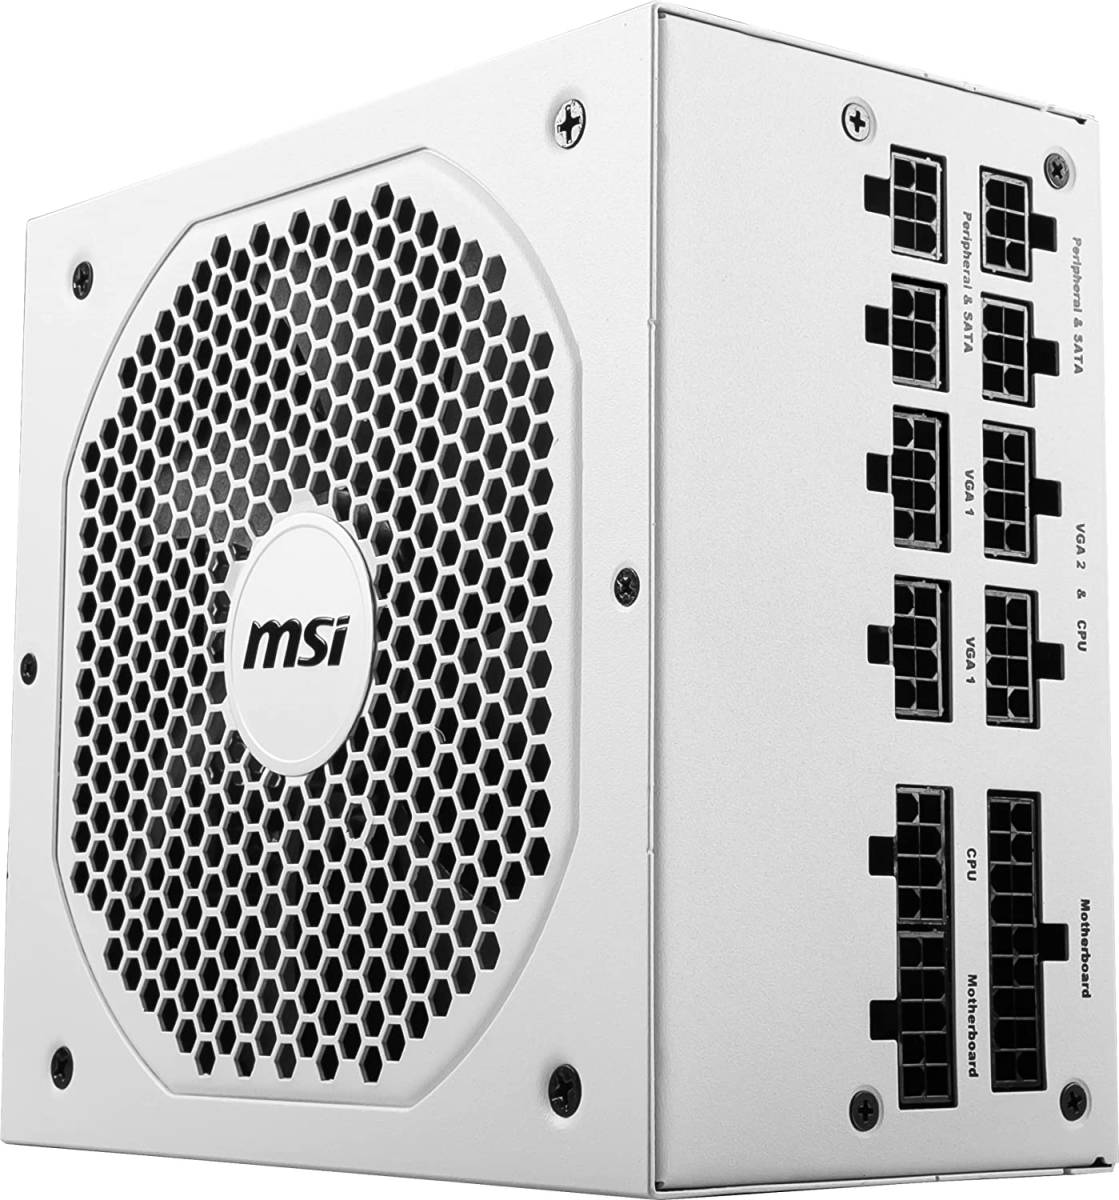  все Япония производитель производства оптимальный . размер NVIDIA GeForce RTX 30 Series GPU. соответствует MSI MPG A750GF WHITE PC источник питания 750W 80PLUS Gold